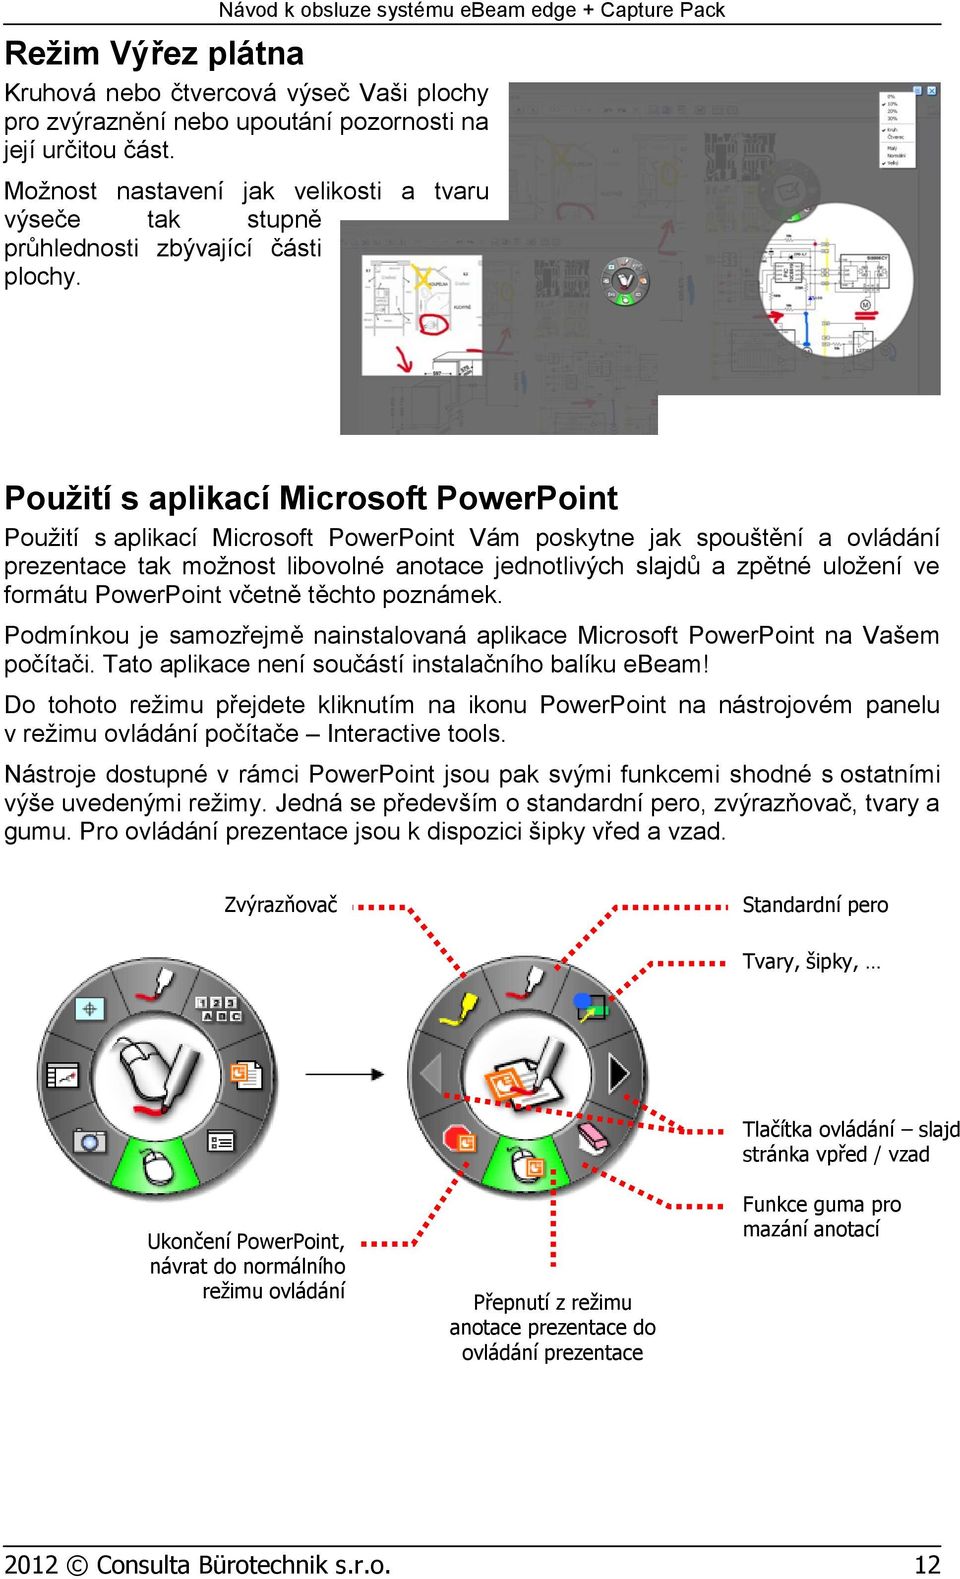 Použití s aplikací Microsoft PowerPoint Použití s aplikací Microsoft PowerPoint Vám poskytne jak spouštění a ovládání prezentace tak možnost libovolné anotace jednotlivých slajdů a zpětné uložení ve